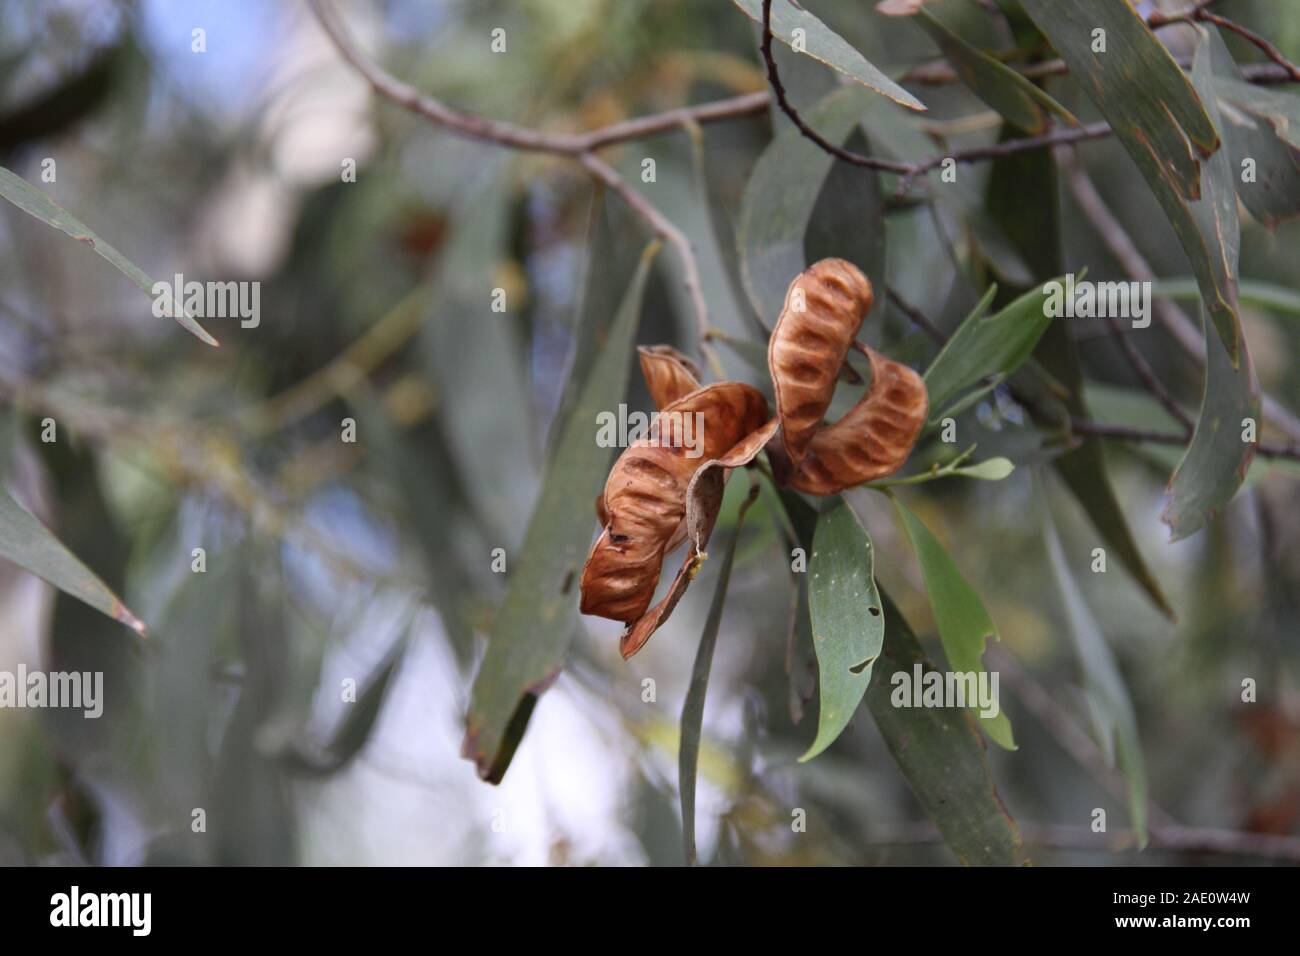 Graines et branche des nattes dorées en bois de Salwood (Acacia Aulacocarpa) Banque D'Images